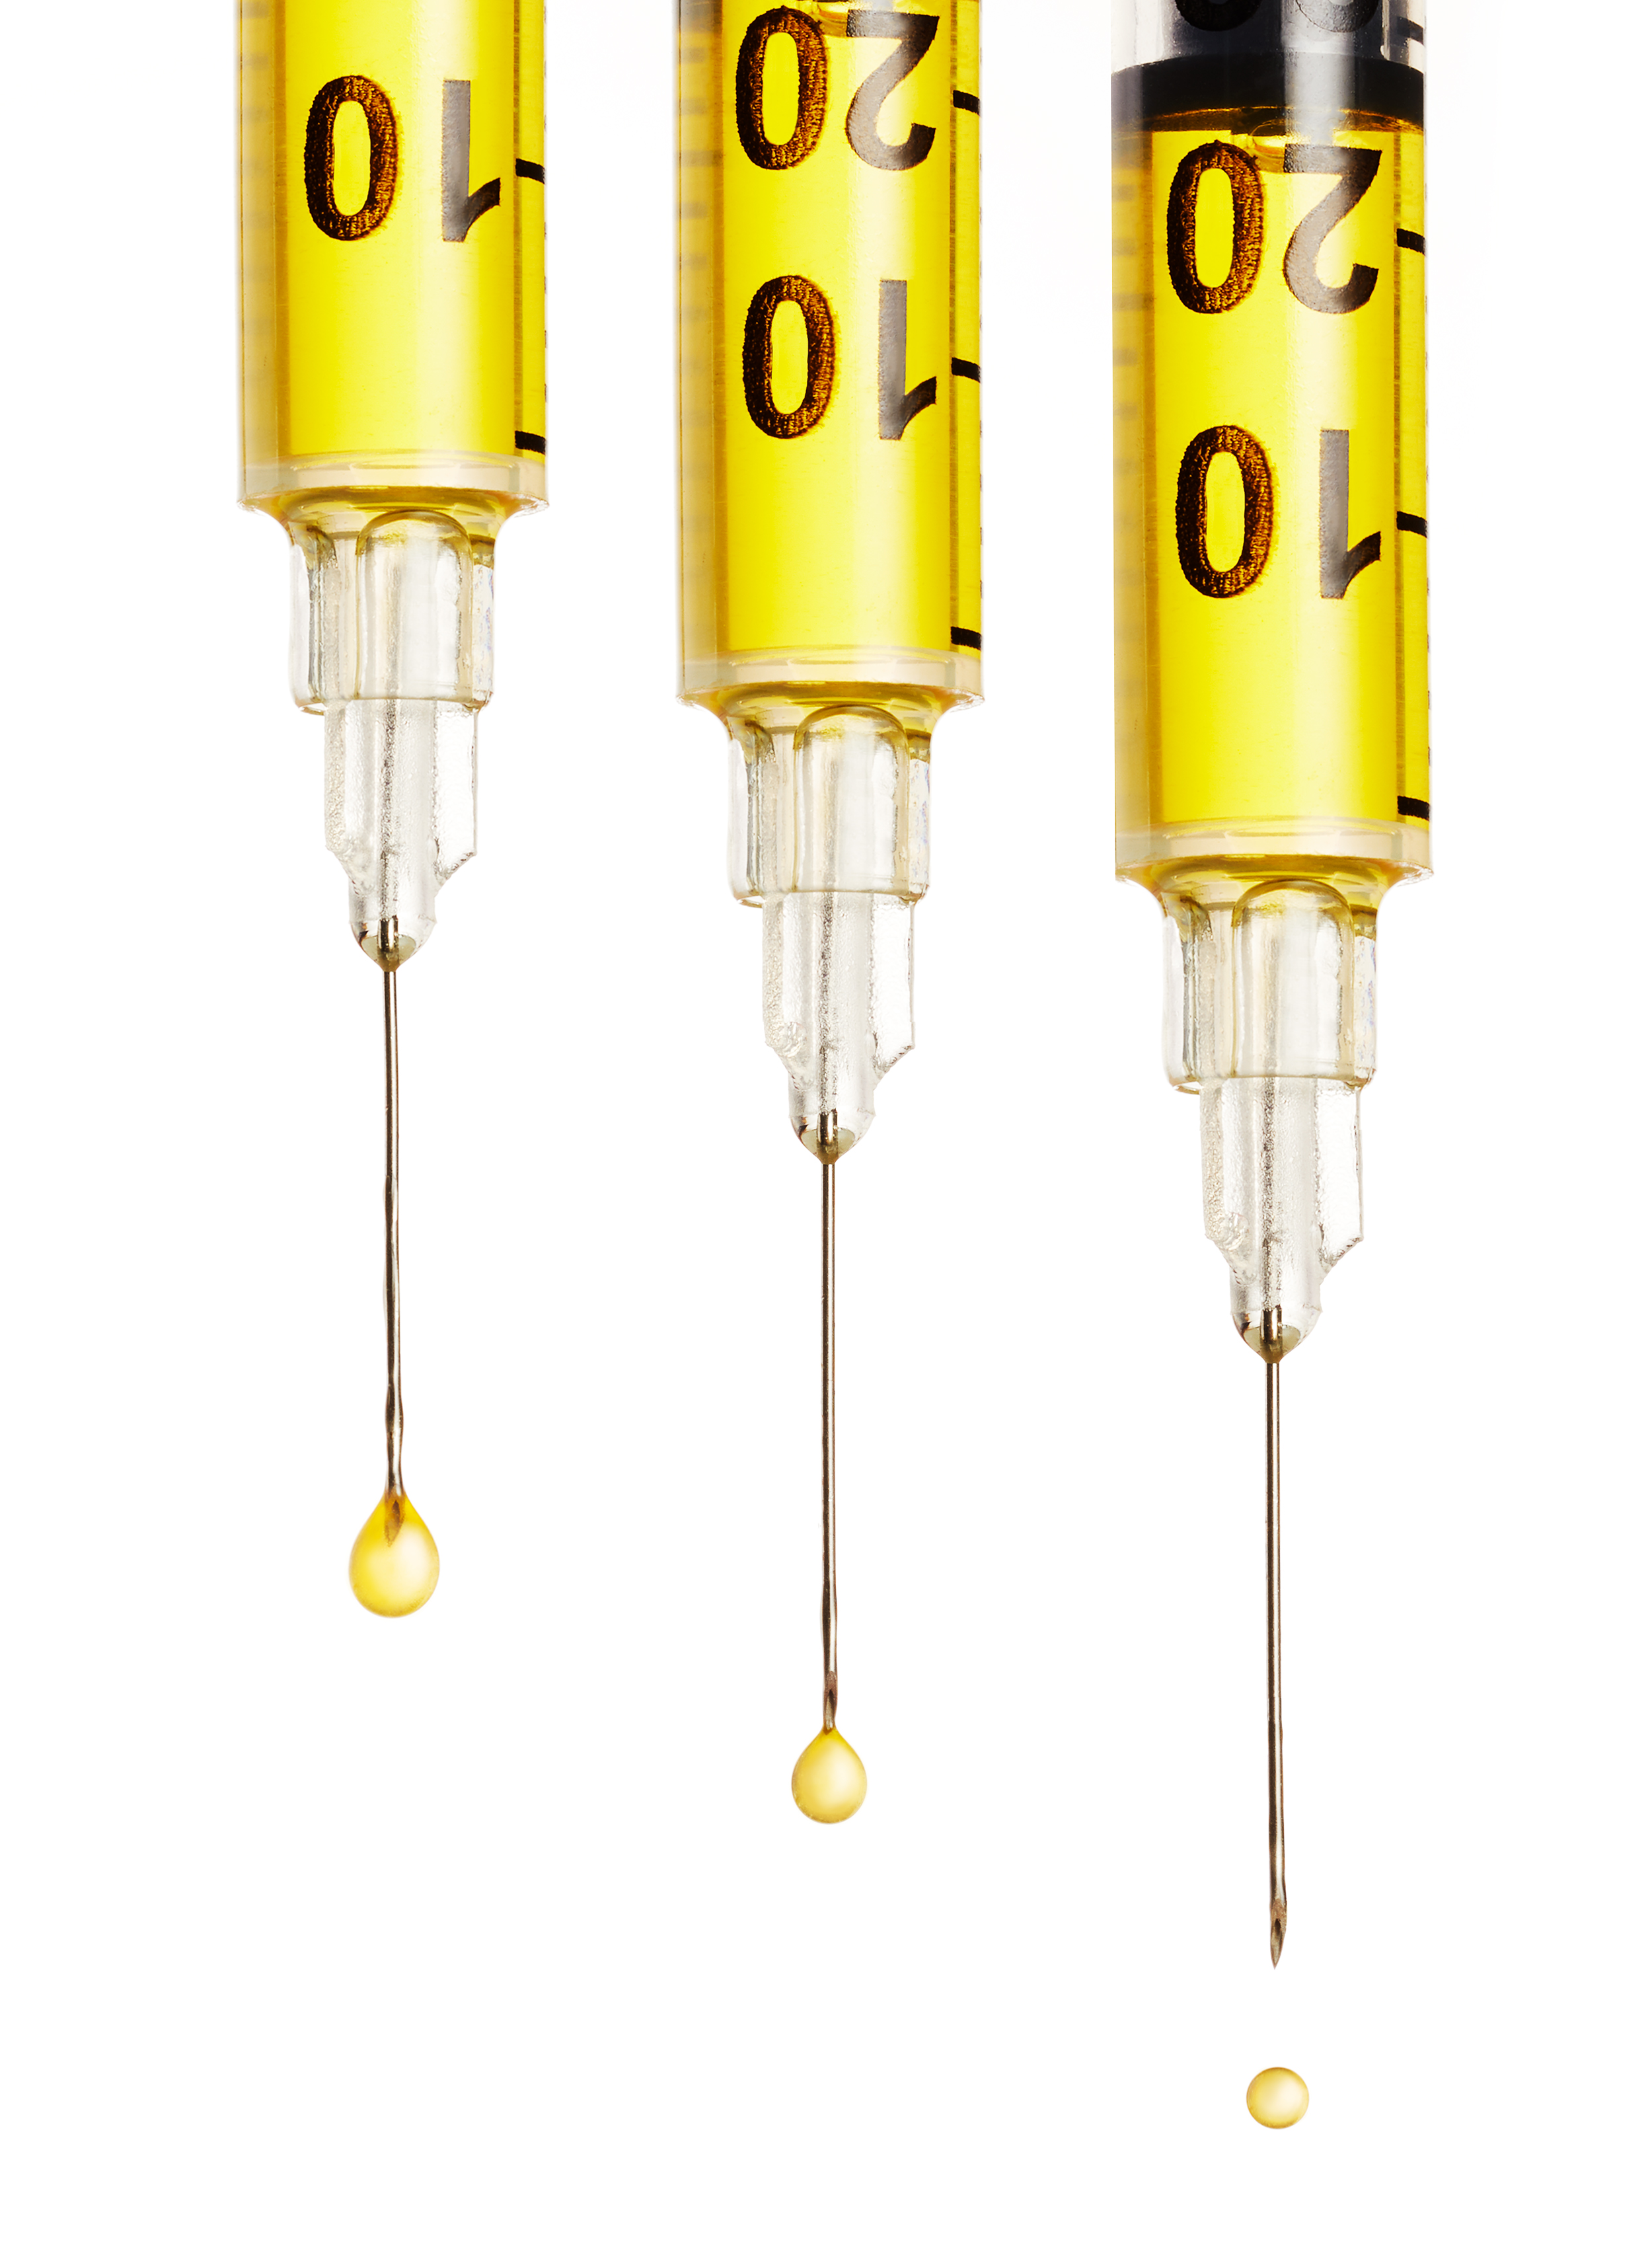 tidepool-simmons-vaccine-liquid-medical-syringes